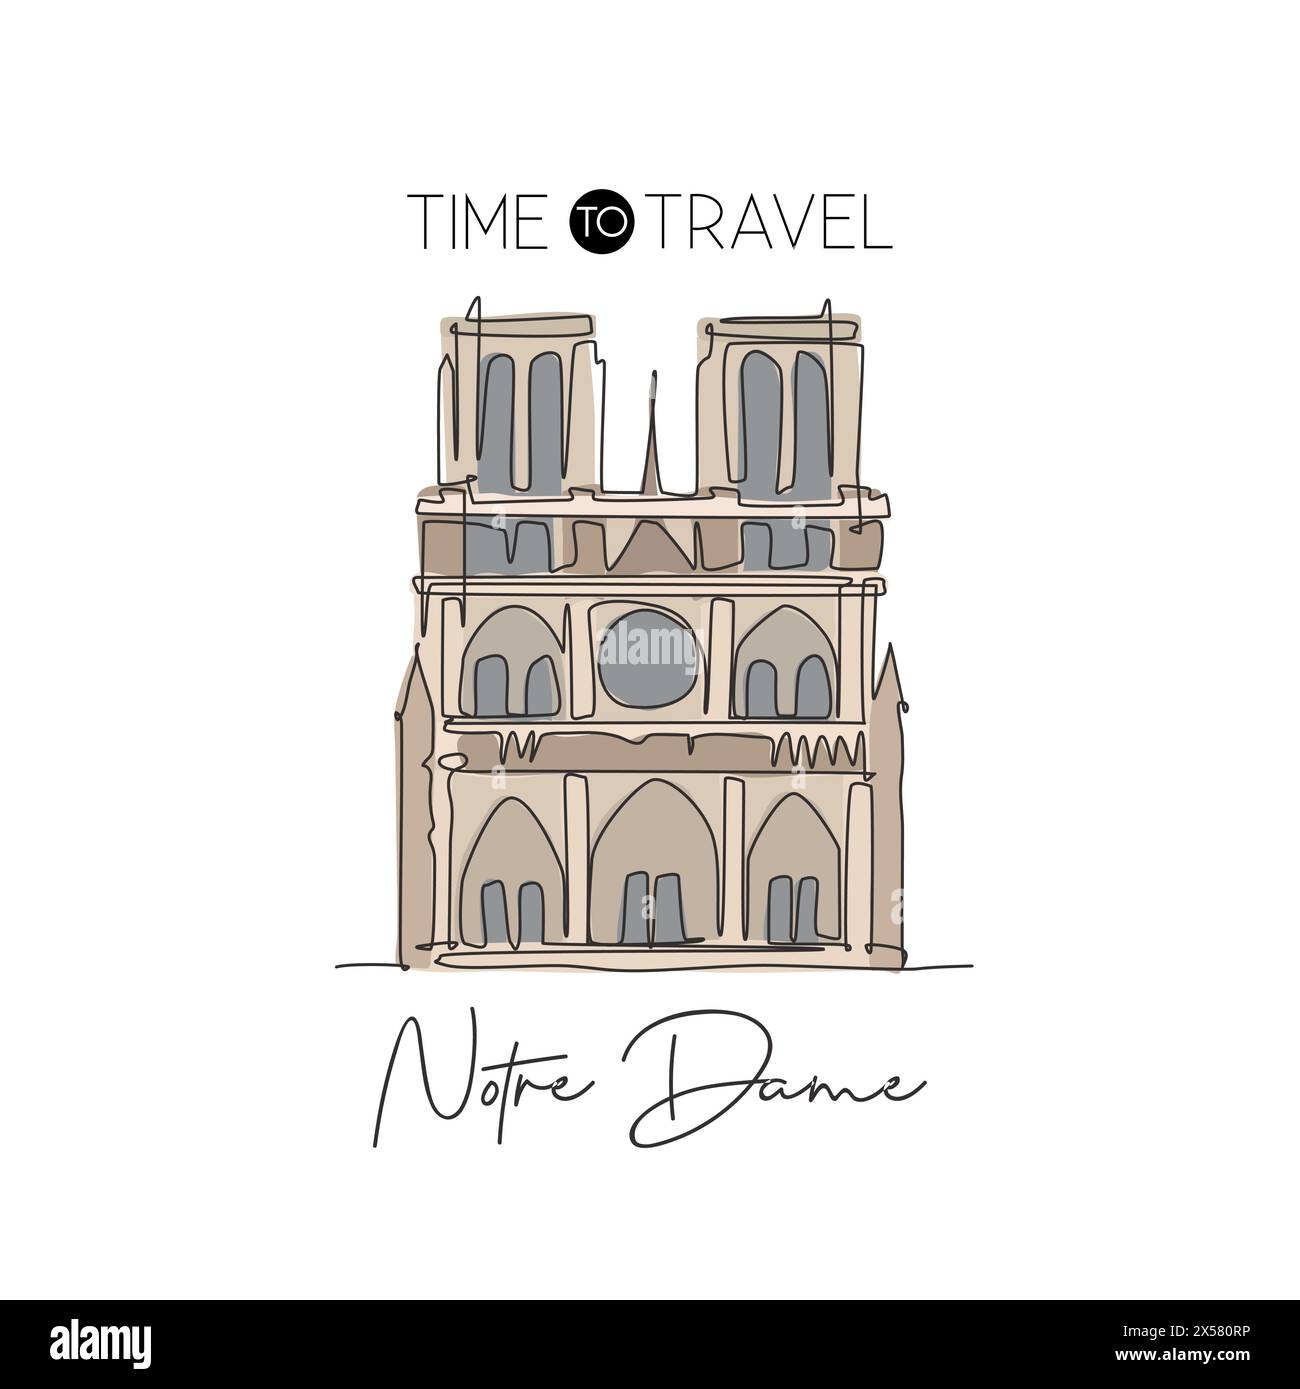 Una linea continua che disegna il monumento di Notre Dame. Luogo iconico del mondo a Parigi, Francia. Casa per le vacanze, arredamento da parete, stampa di poster. Moder Illustrazione Vettoriale